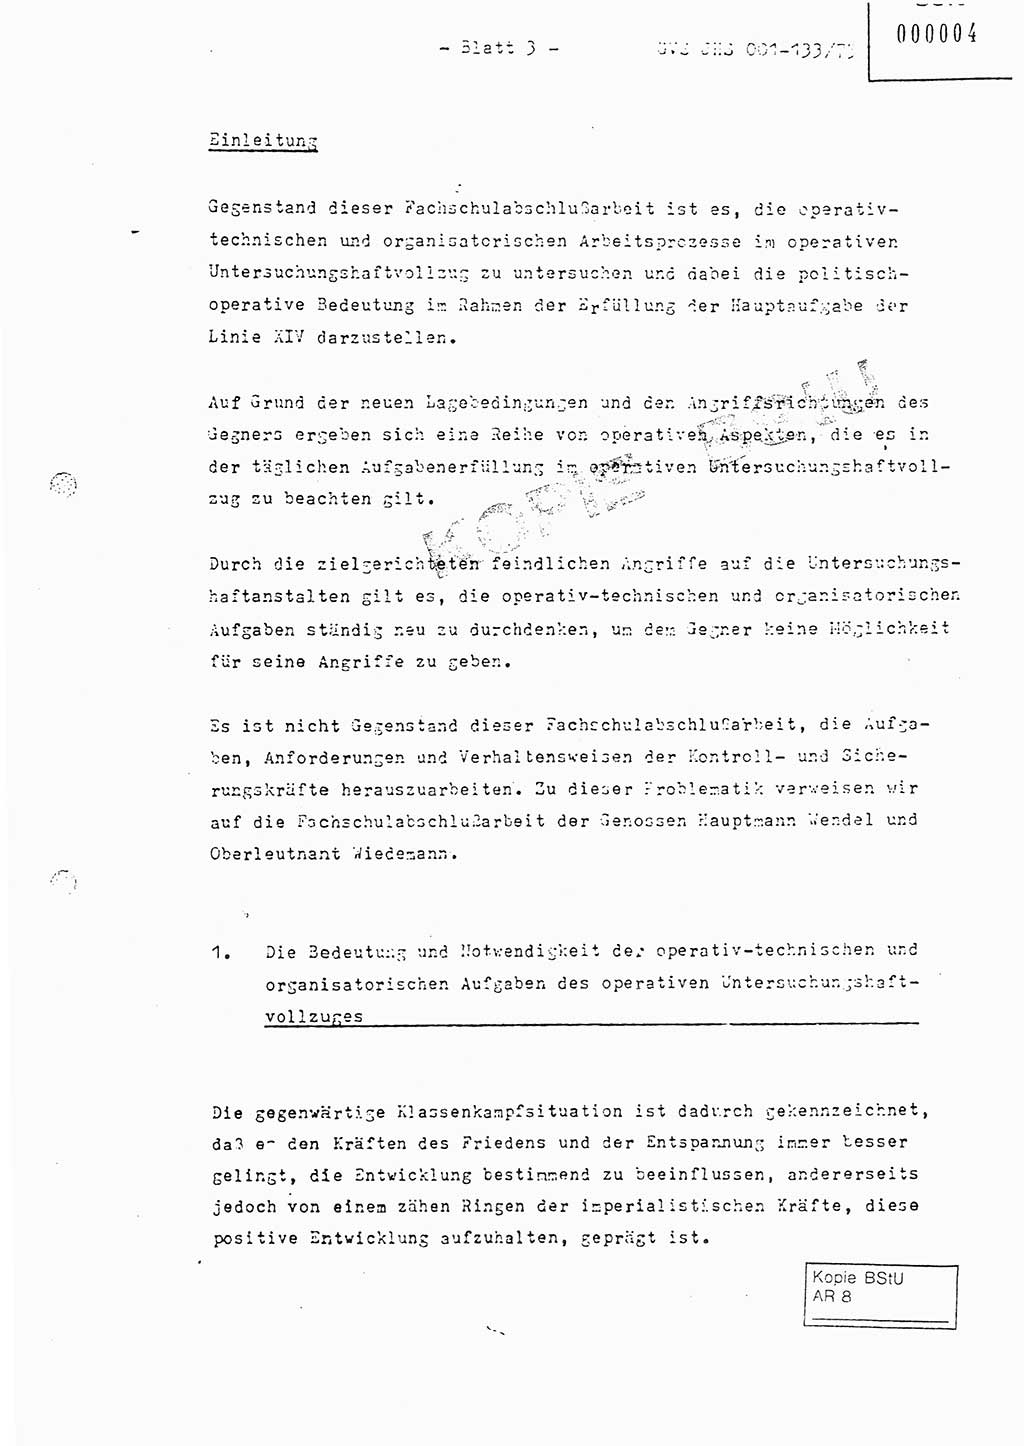 Fachschulabschlußarbeit Major Werner Braun (Abt. ⅩⅣ), Hauptmann Klaus Zeiß (Abt. ⅩⅣ), Ministerium für Staatssicherheit (MfS) [Deutsche Demokratische Republik (DDR)], Juristische Hochschule (JHS), Geheime Verschlußsache (GVS) 001-133/75, Potsdam 1976, Blatt 3 (FS-Abschl.-Arb. MfS DDR JHS GVS 001-133/75 1976, Bl. 3)